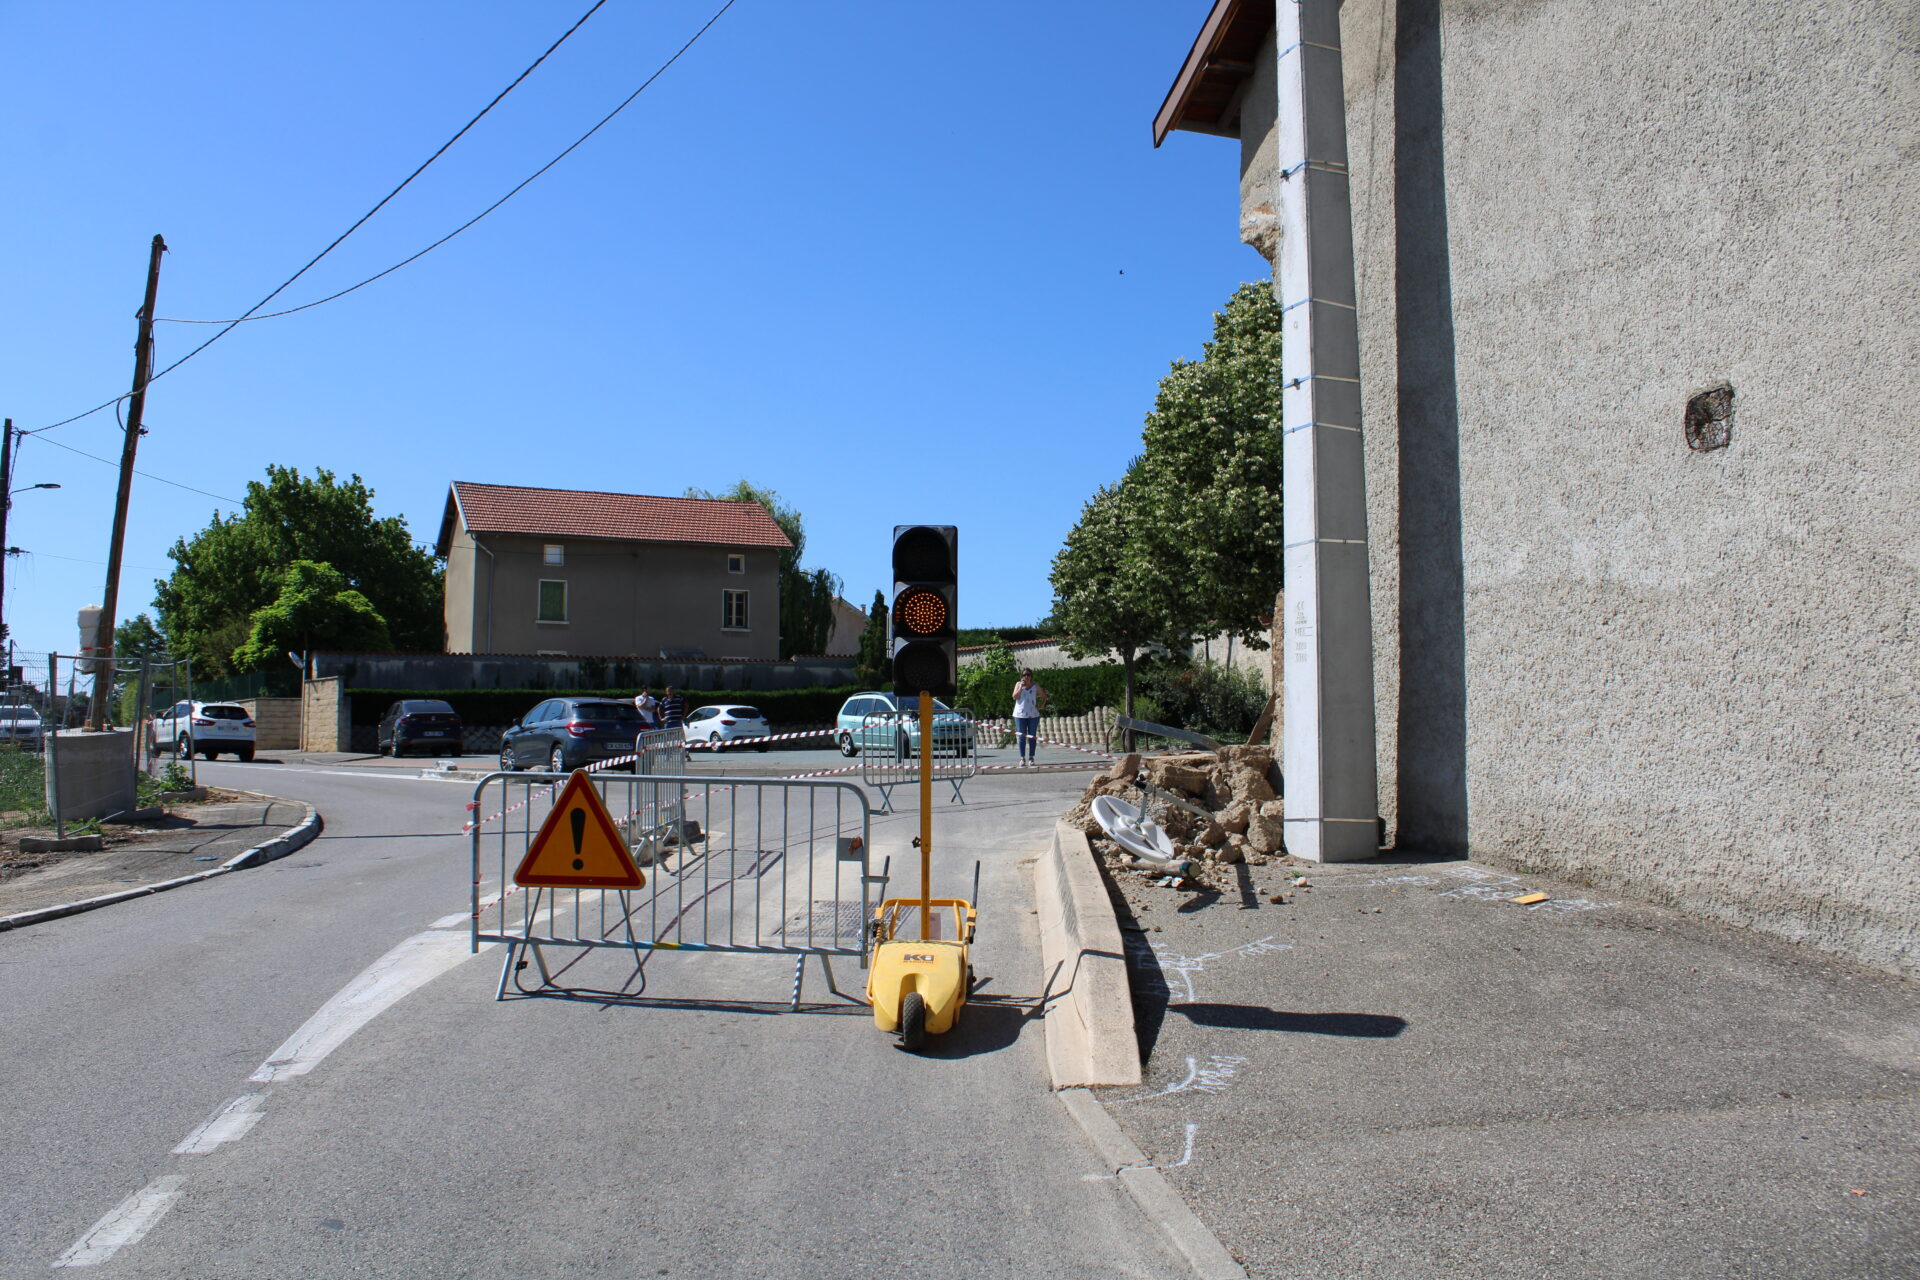 Accident à Chavagneux à l'intersection entre la rue du village et la montée de la roue: la ville communique